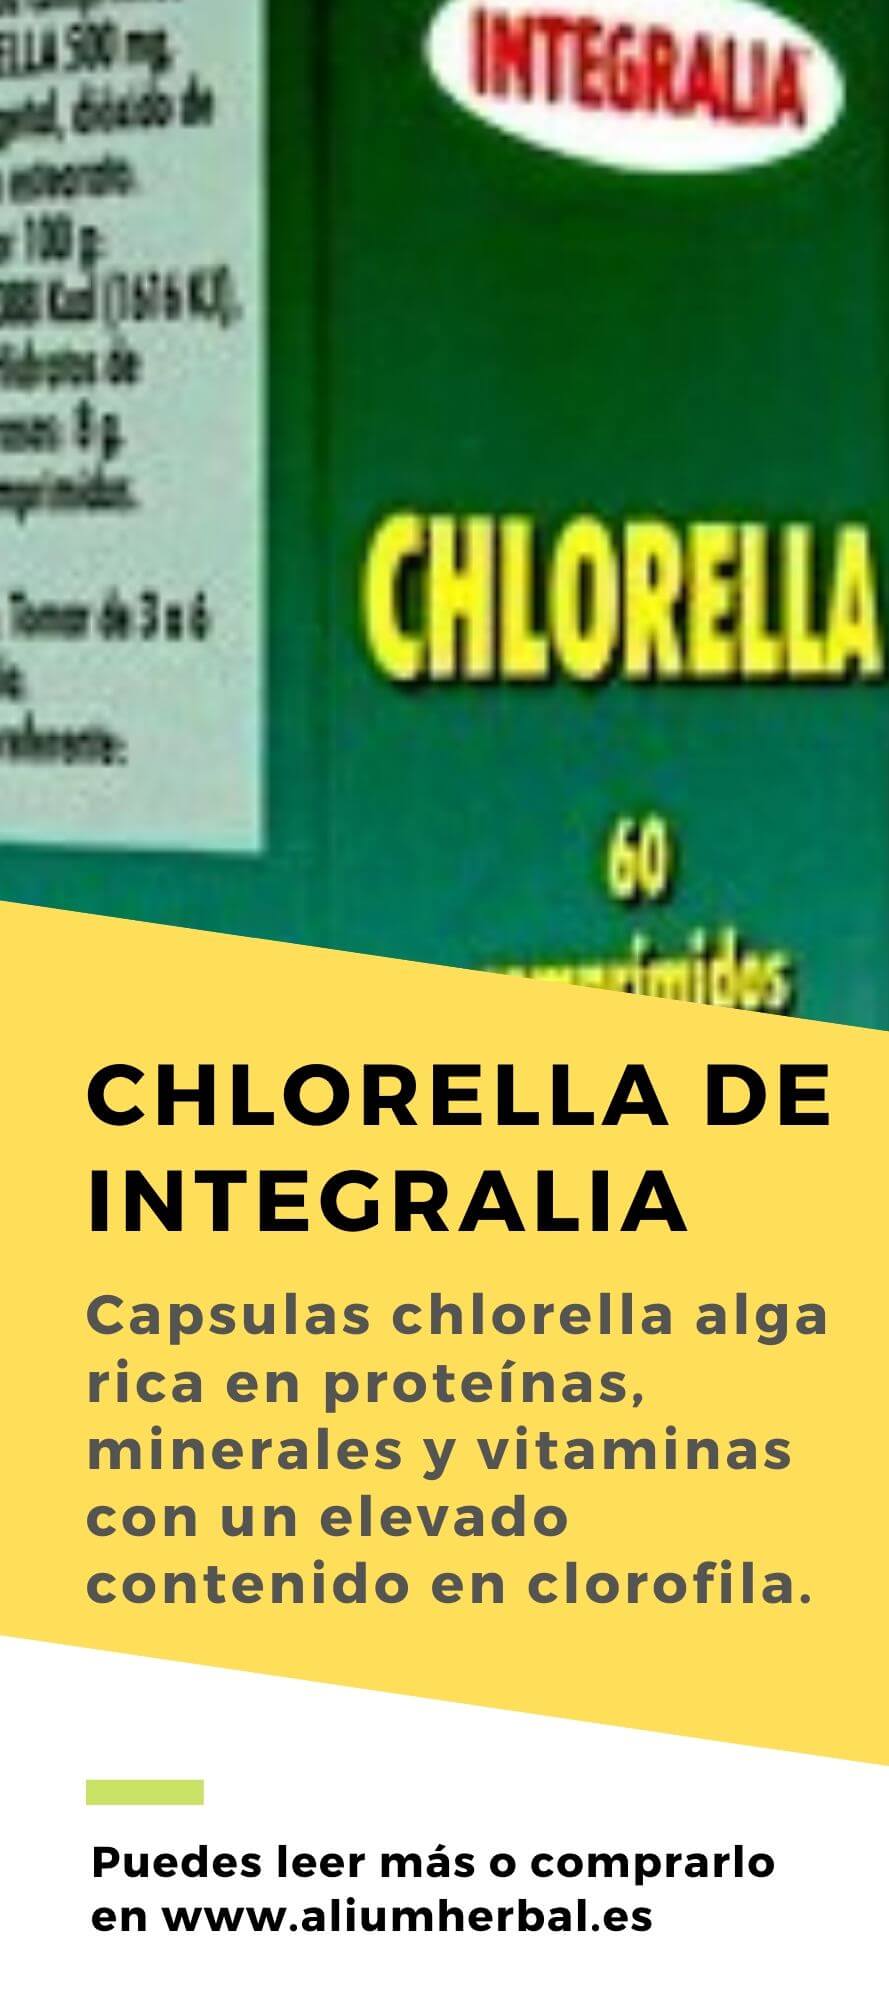 Chlorella 500 mg 60 comprimidos de Integralia